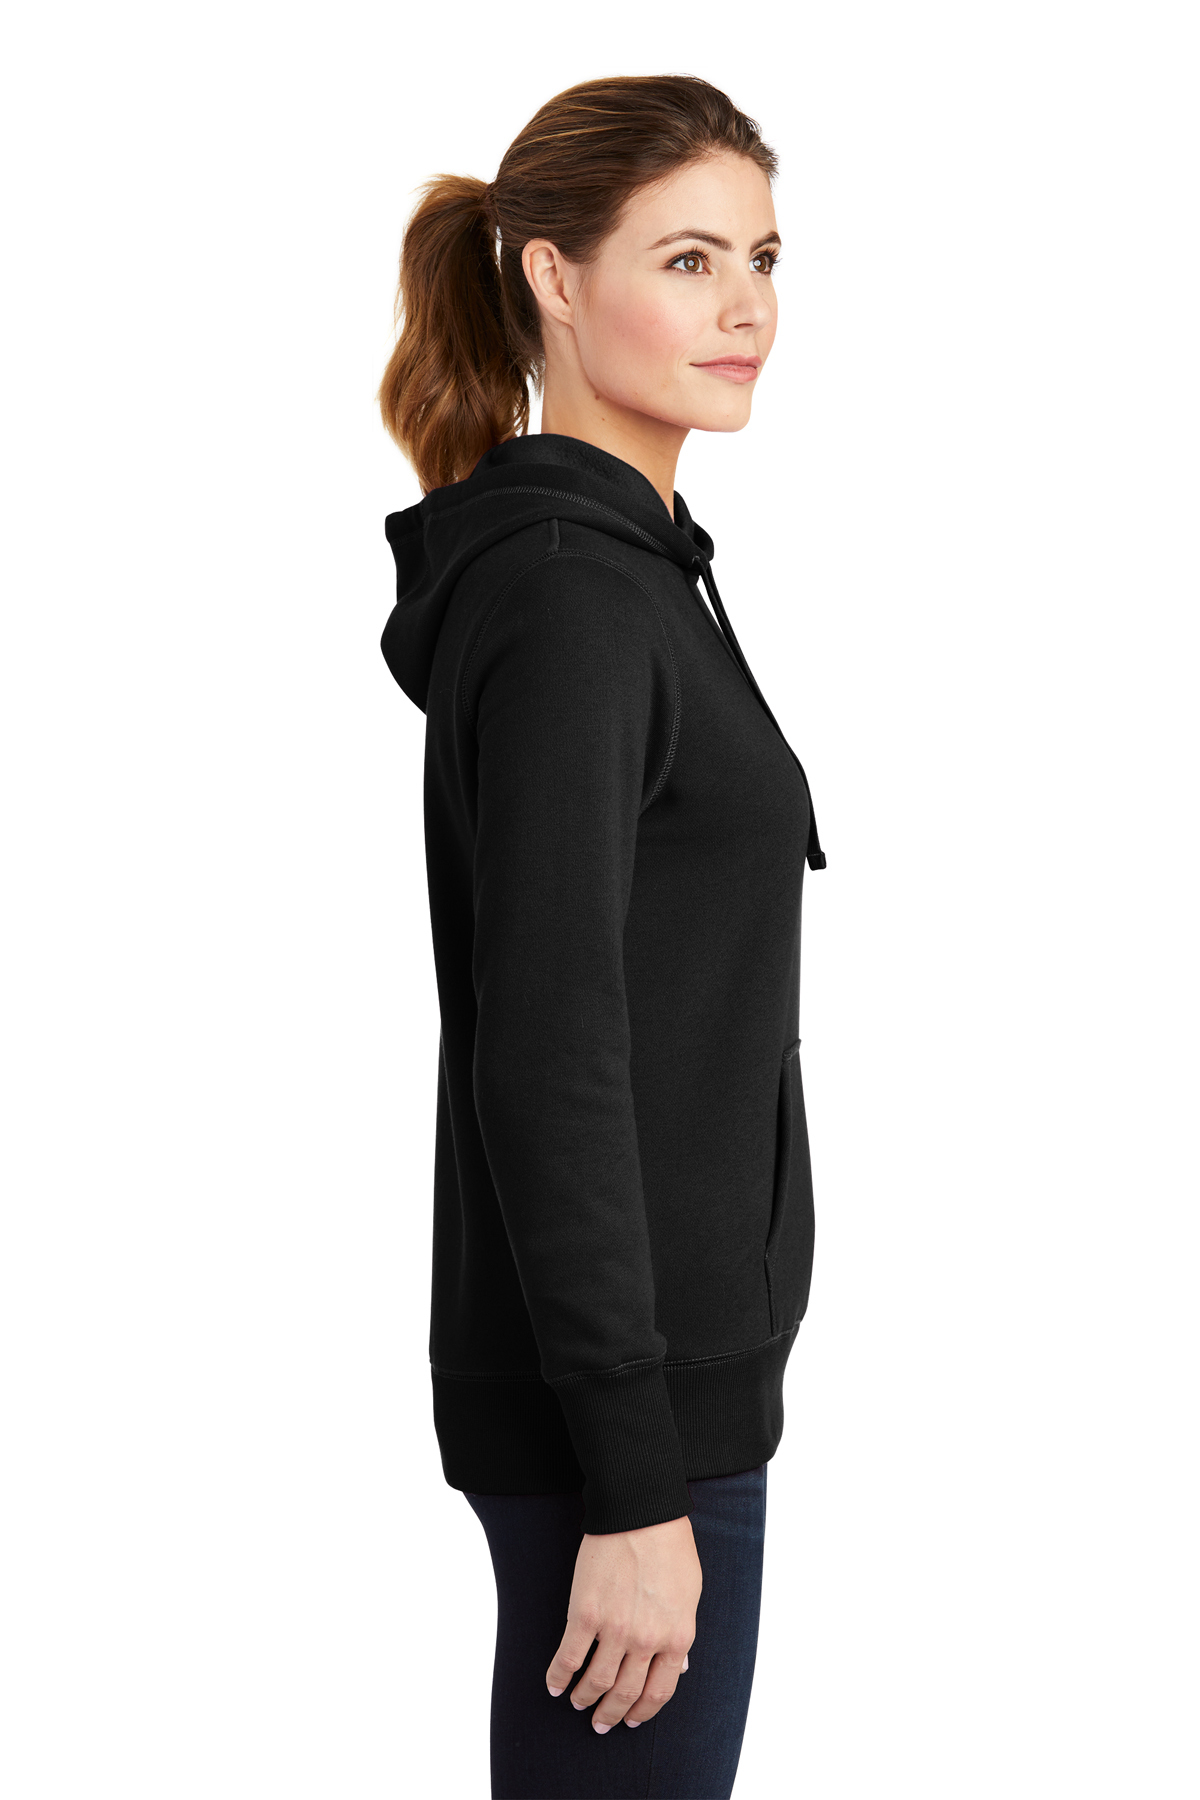 Sport-Tek Ladies Pullover Hooded Sweatshirt, Product